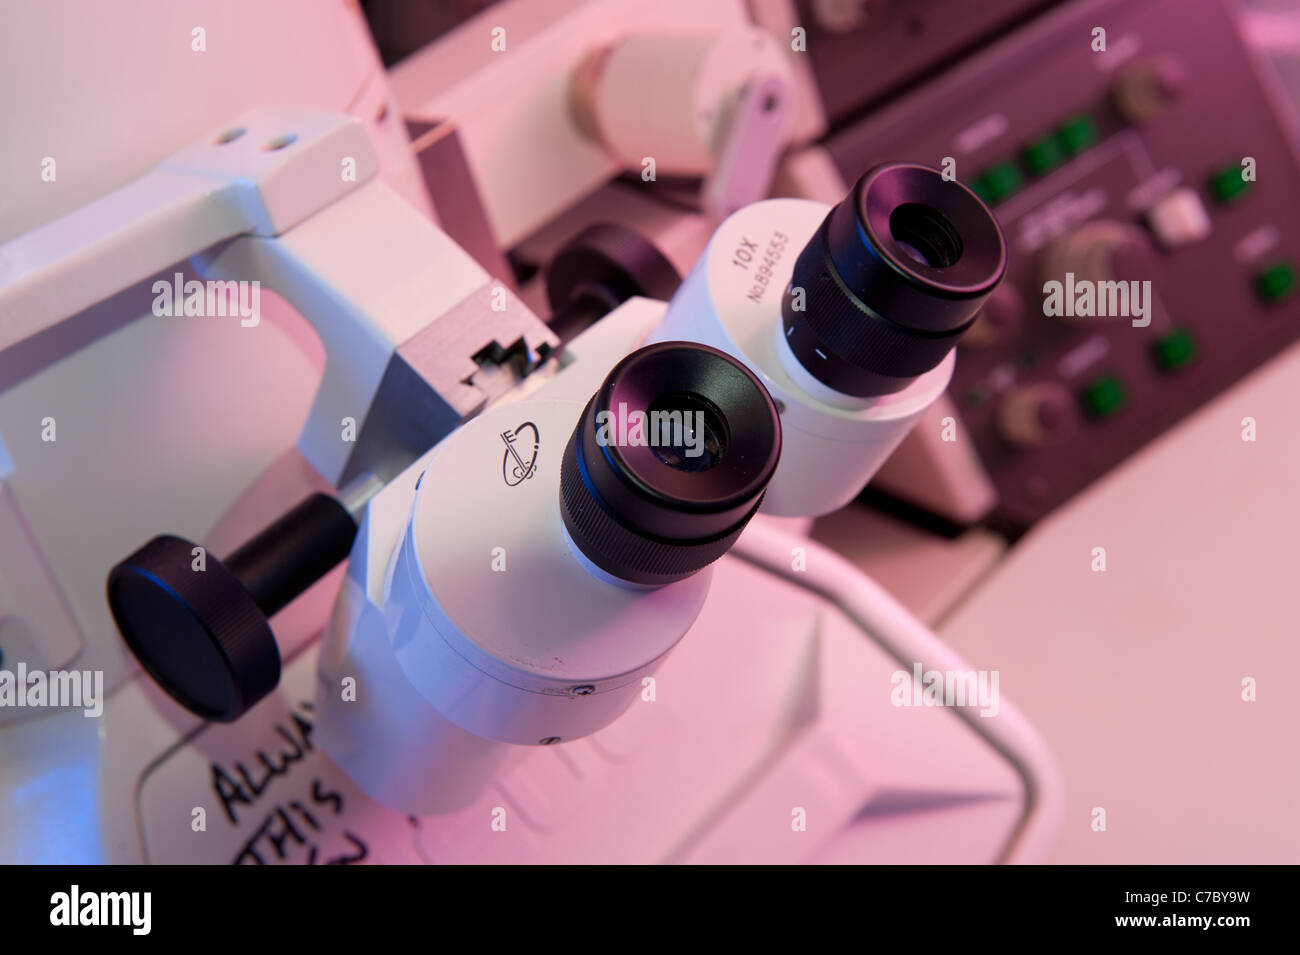 Elektronen-Mikroskop in einem wissenschaftlichen Labor Stockfoto